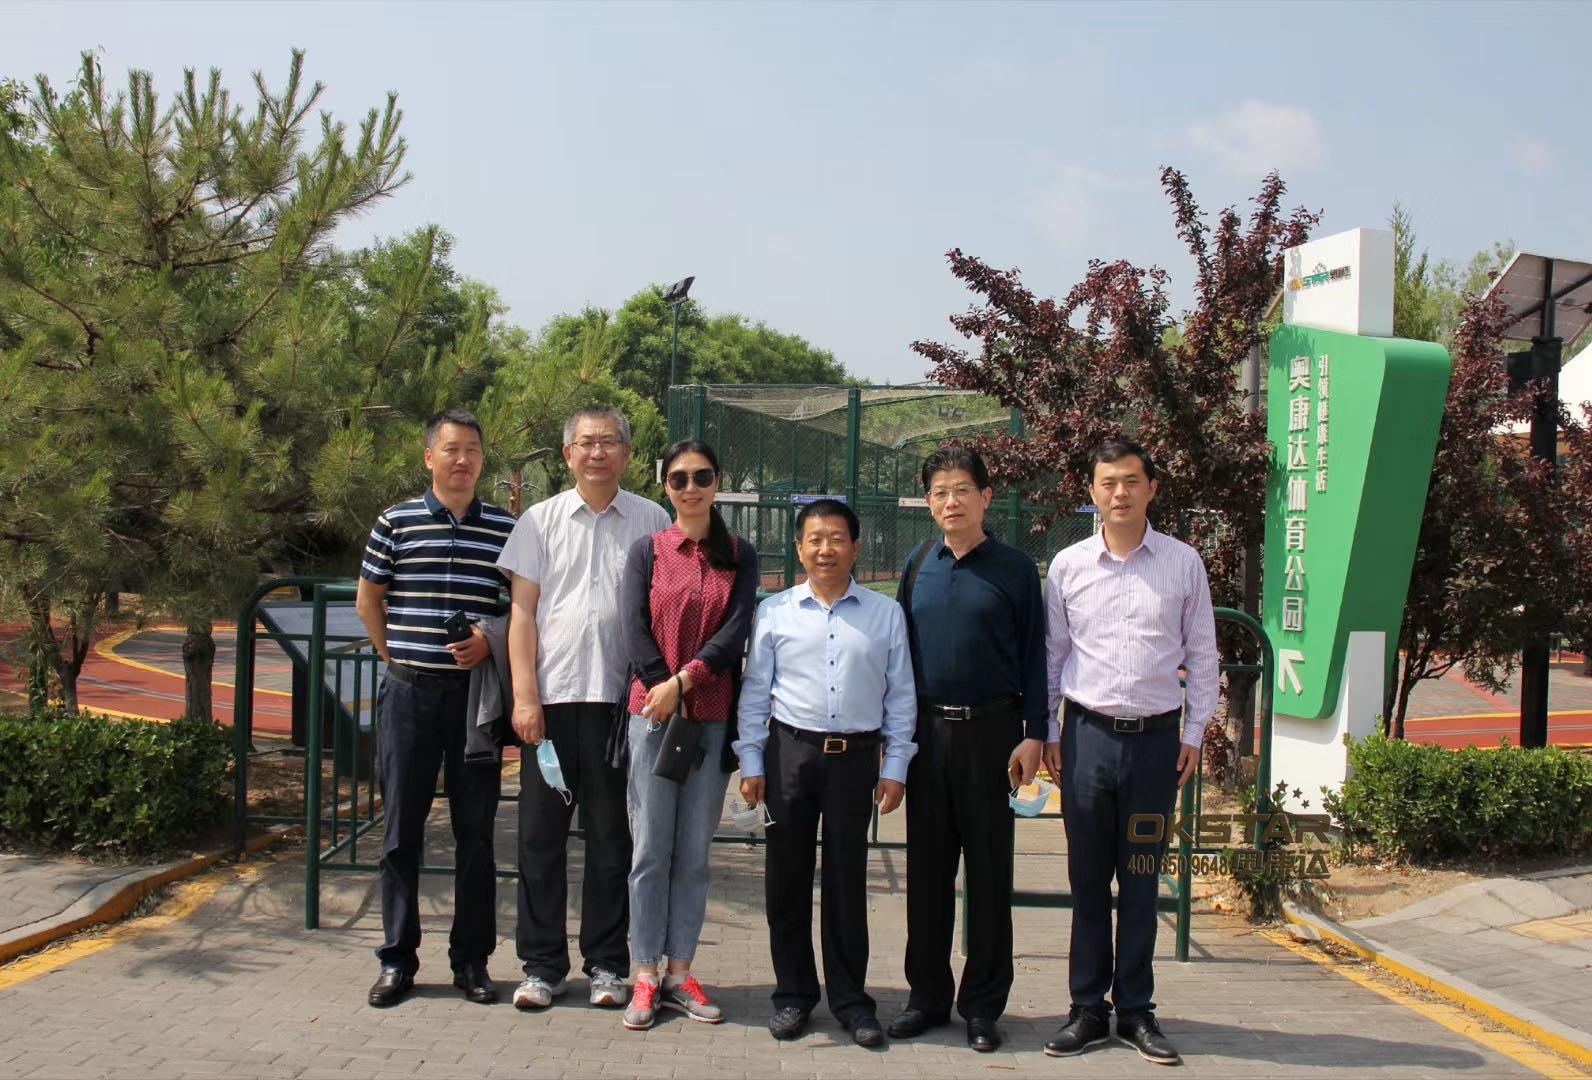 yd2333云顶电子游戏智慧体育公园，迎来北京联合大学四位知名教授莅临指导